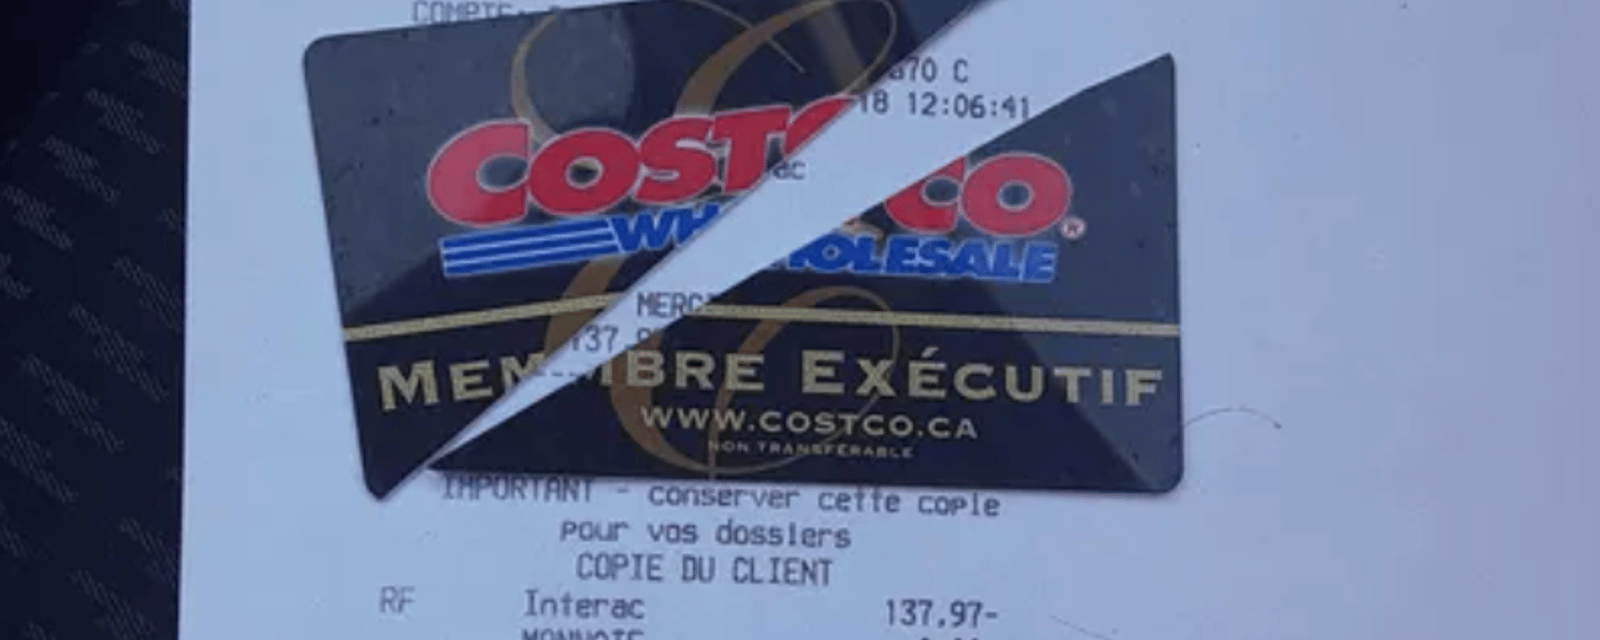 De nombreux clients du Costco découpent leur carte de membre parce qu'ils sont furieux